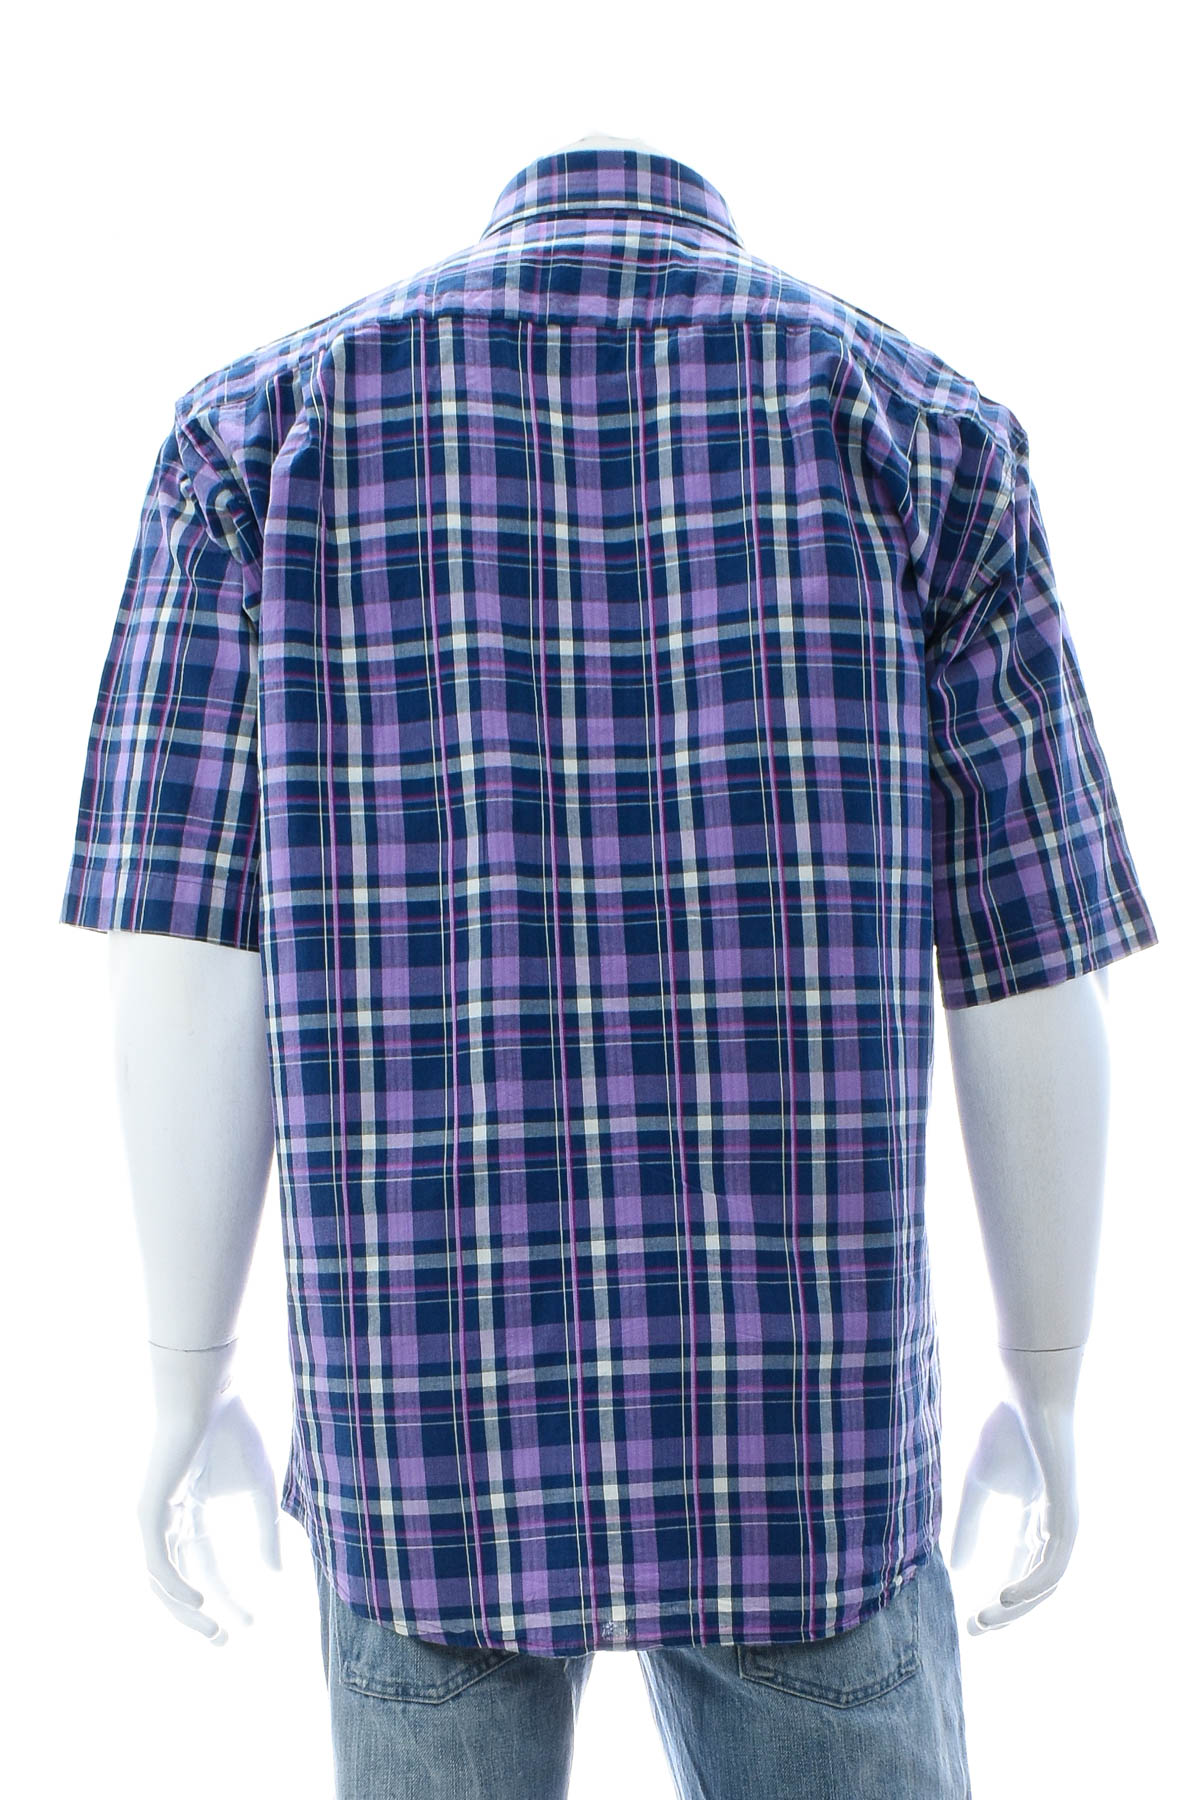 Men's shirt - Teodor - 1